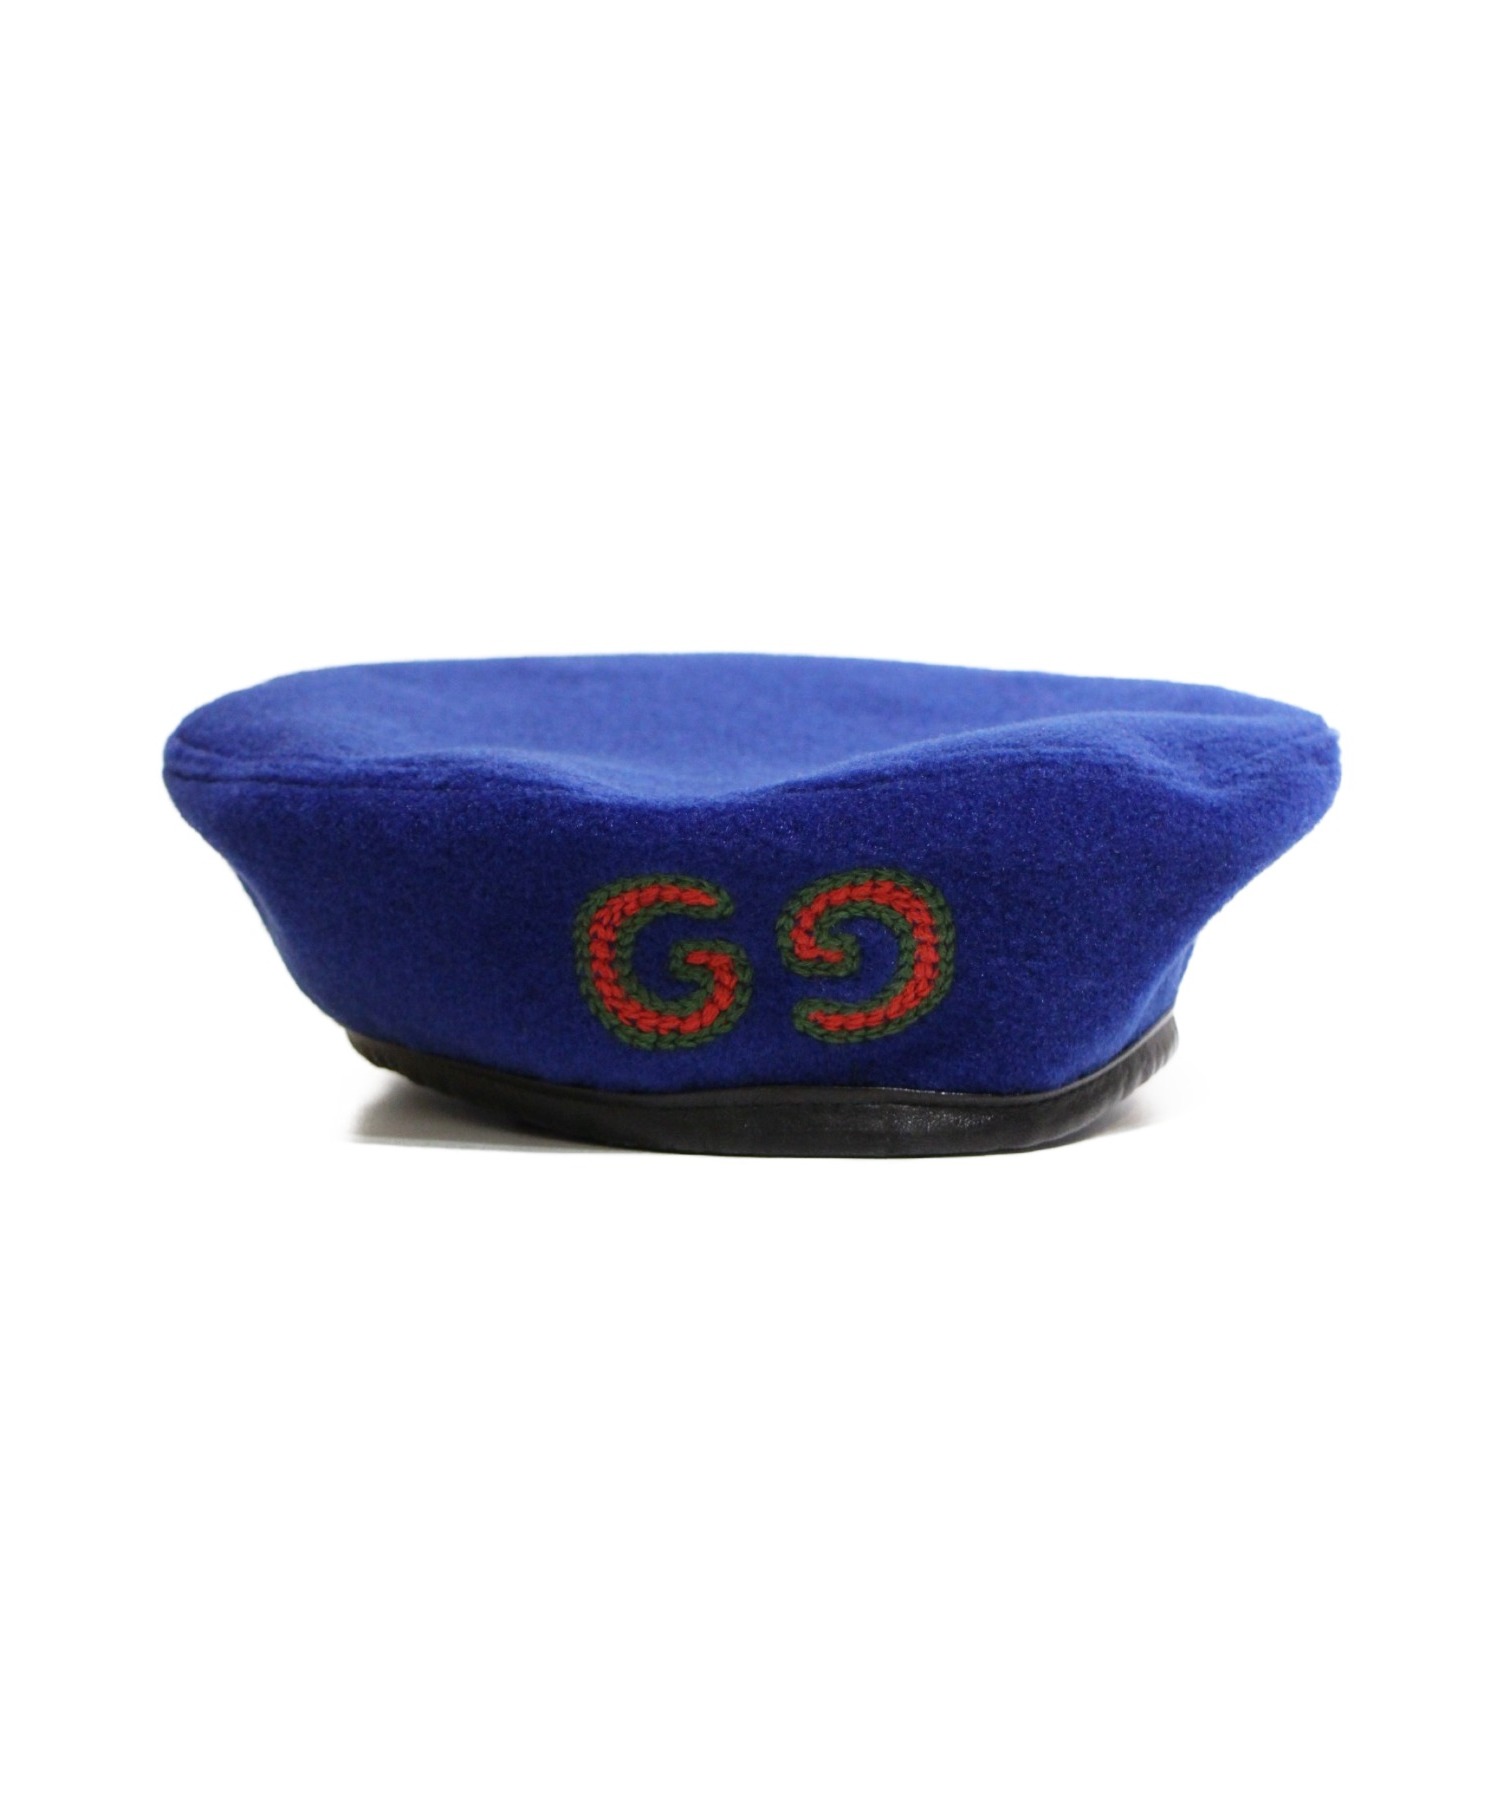 GUCCI (グッチ) ベレー帽 ブルー サイズ:M